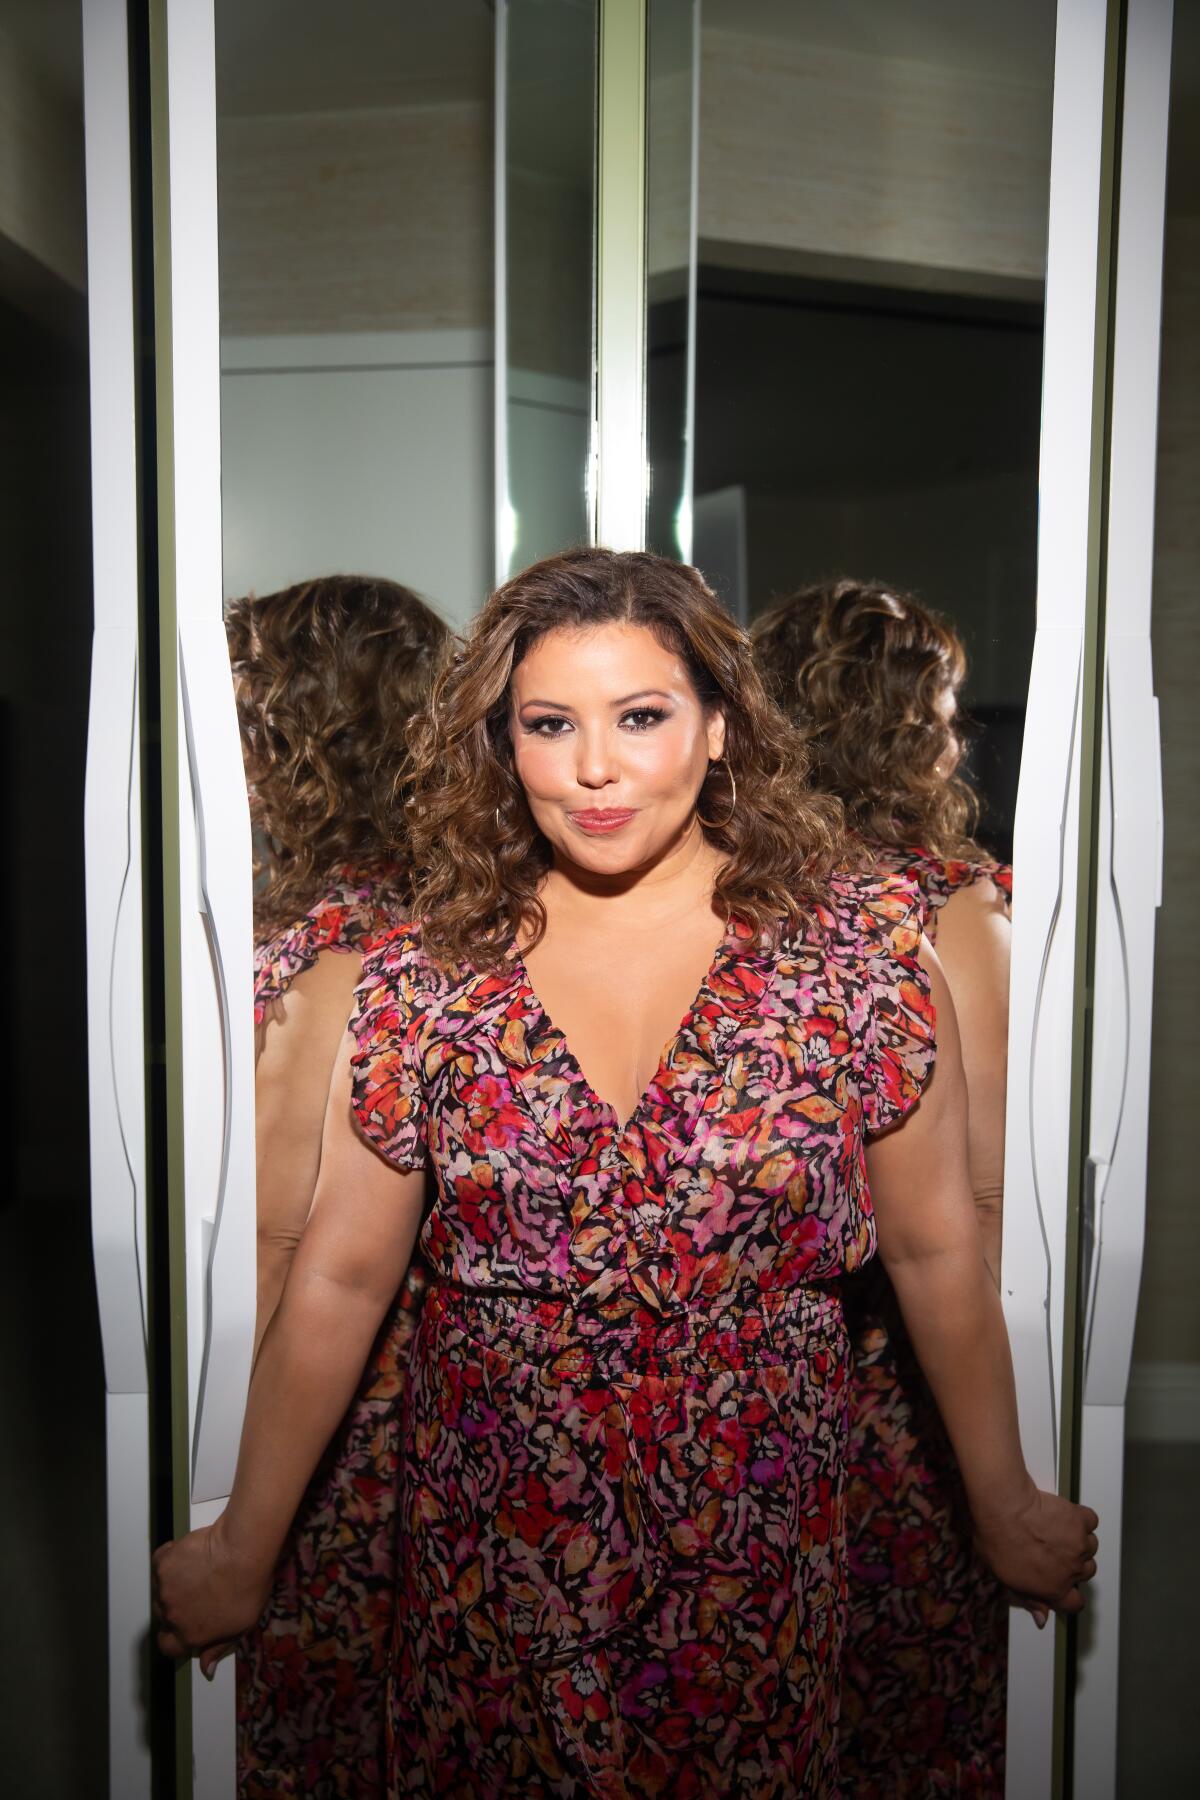 Actor Justina Machado poses in front of a mirror.